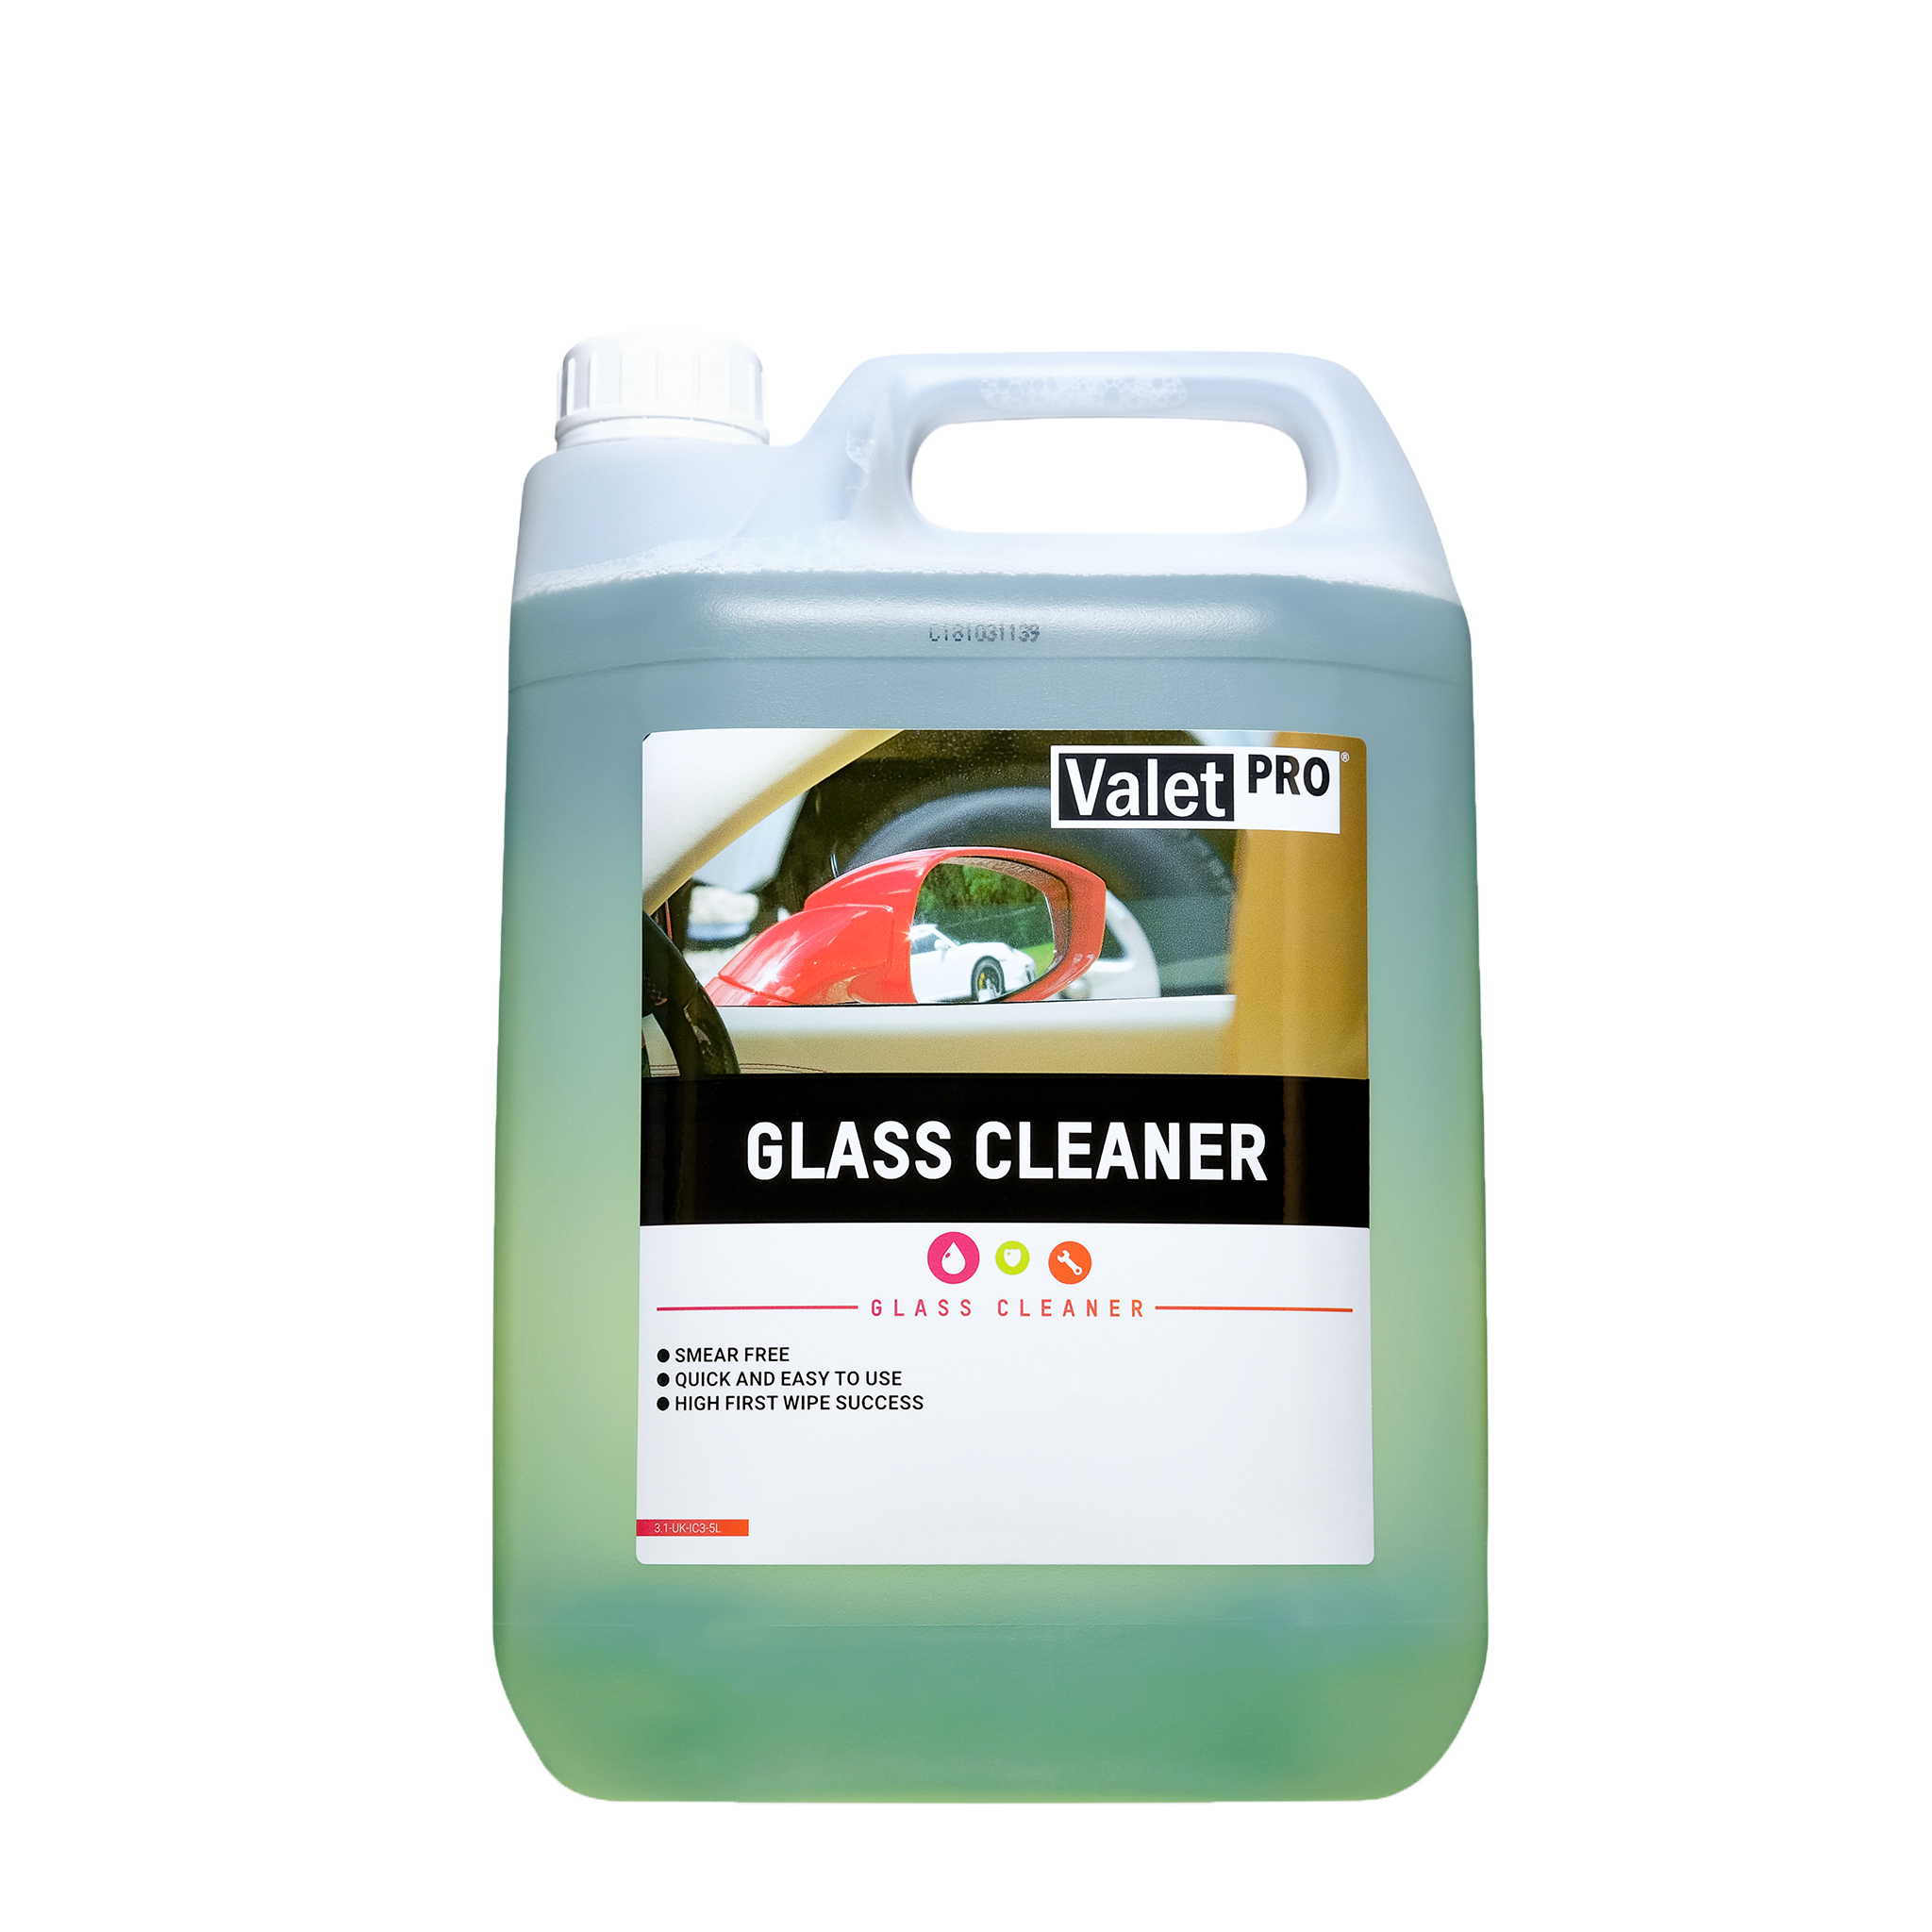 Glassrengjøring ValetPRO Glass Cleaner, 5000 ml / Kanne